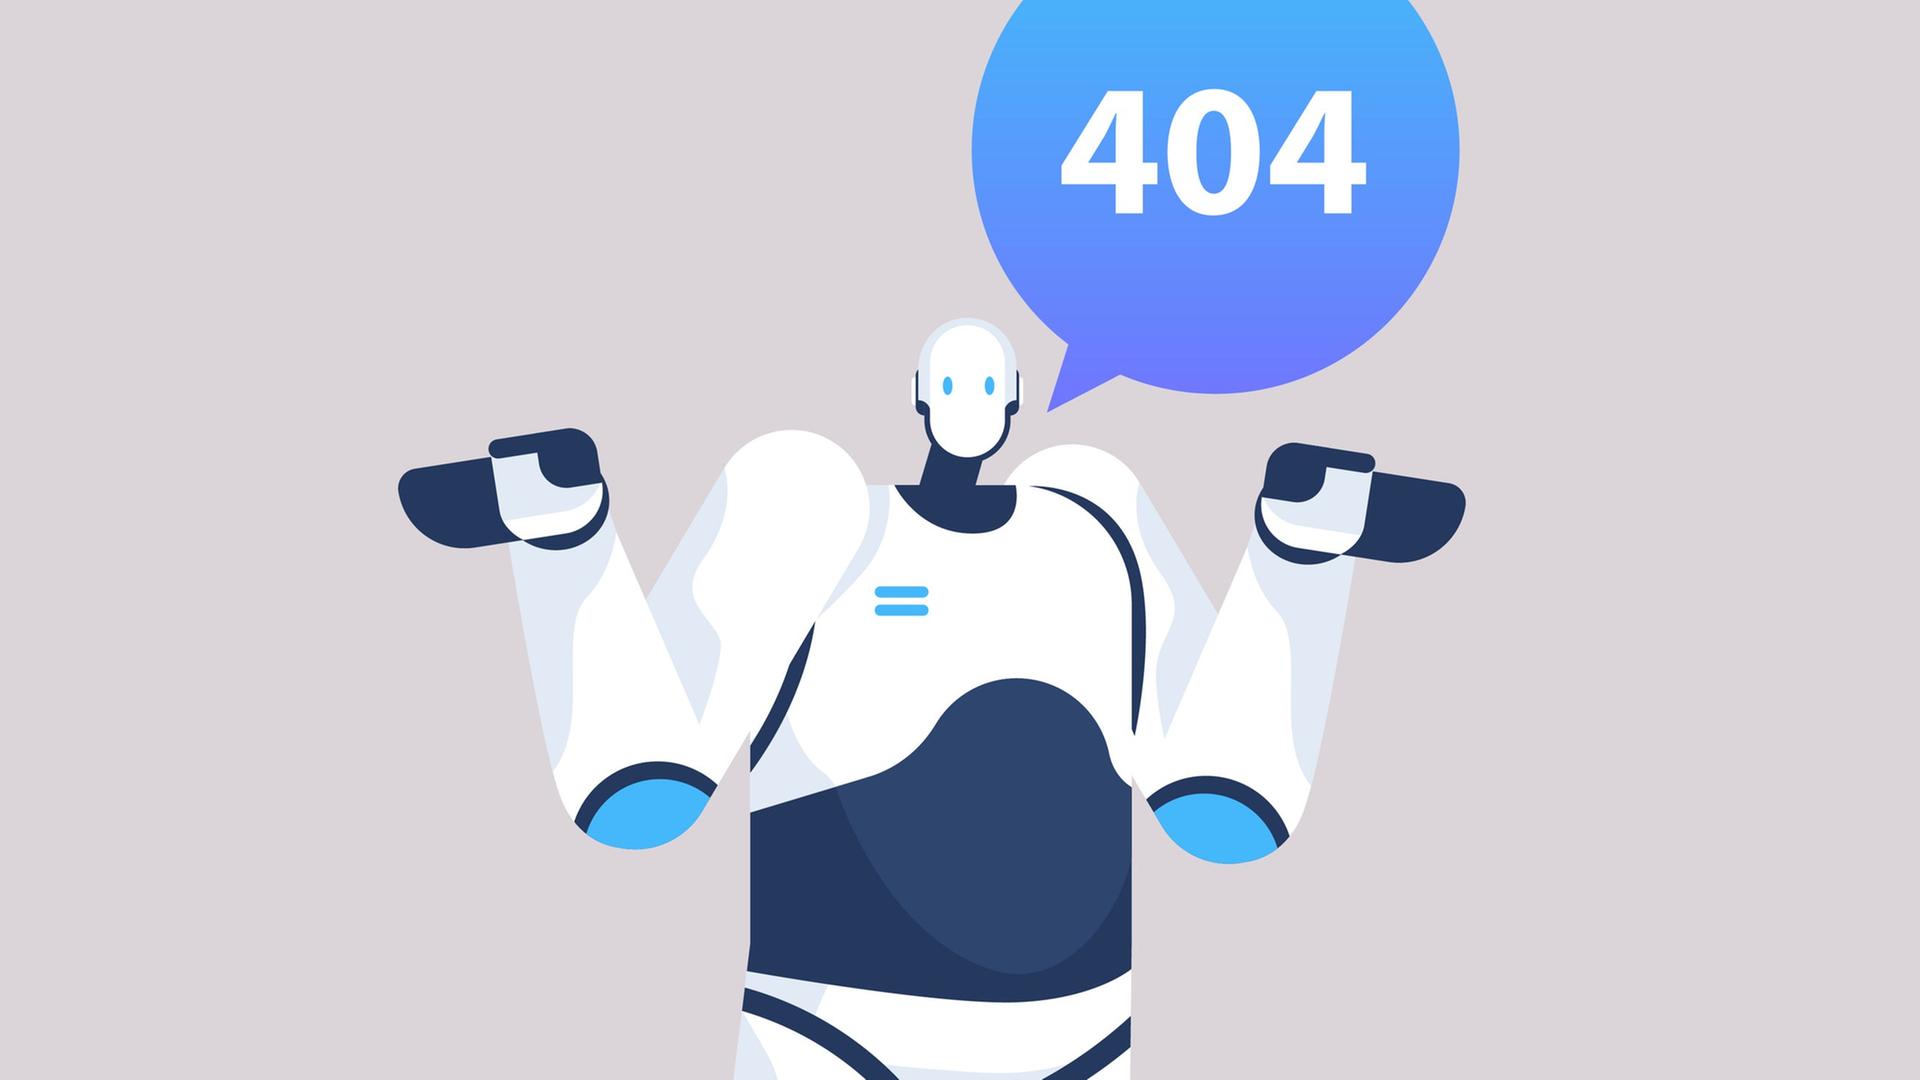 Illustration eines Roboters - in einer Sprechblase ist die Fehlermeldung 404 zu lesen